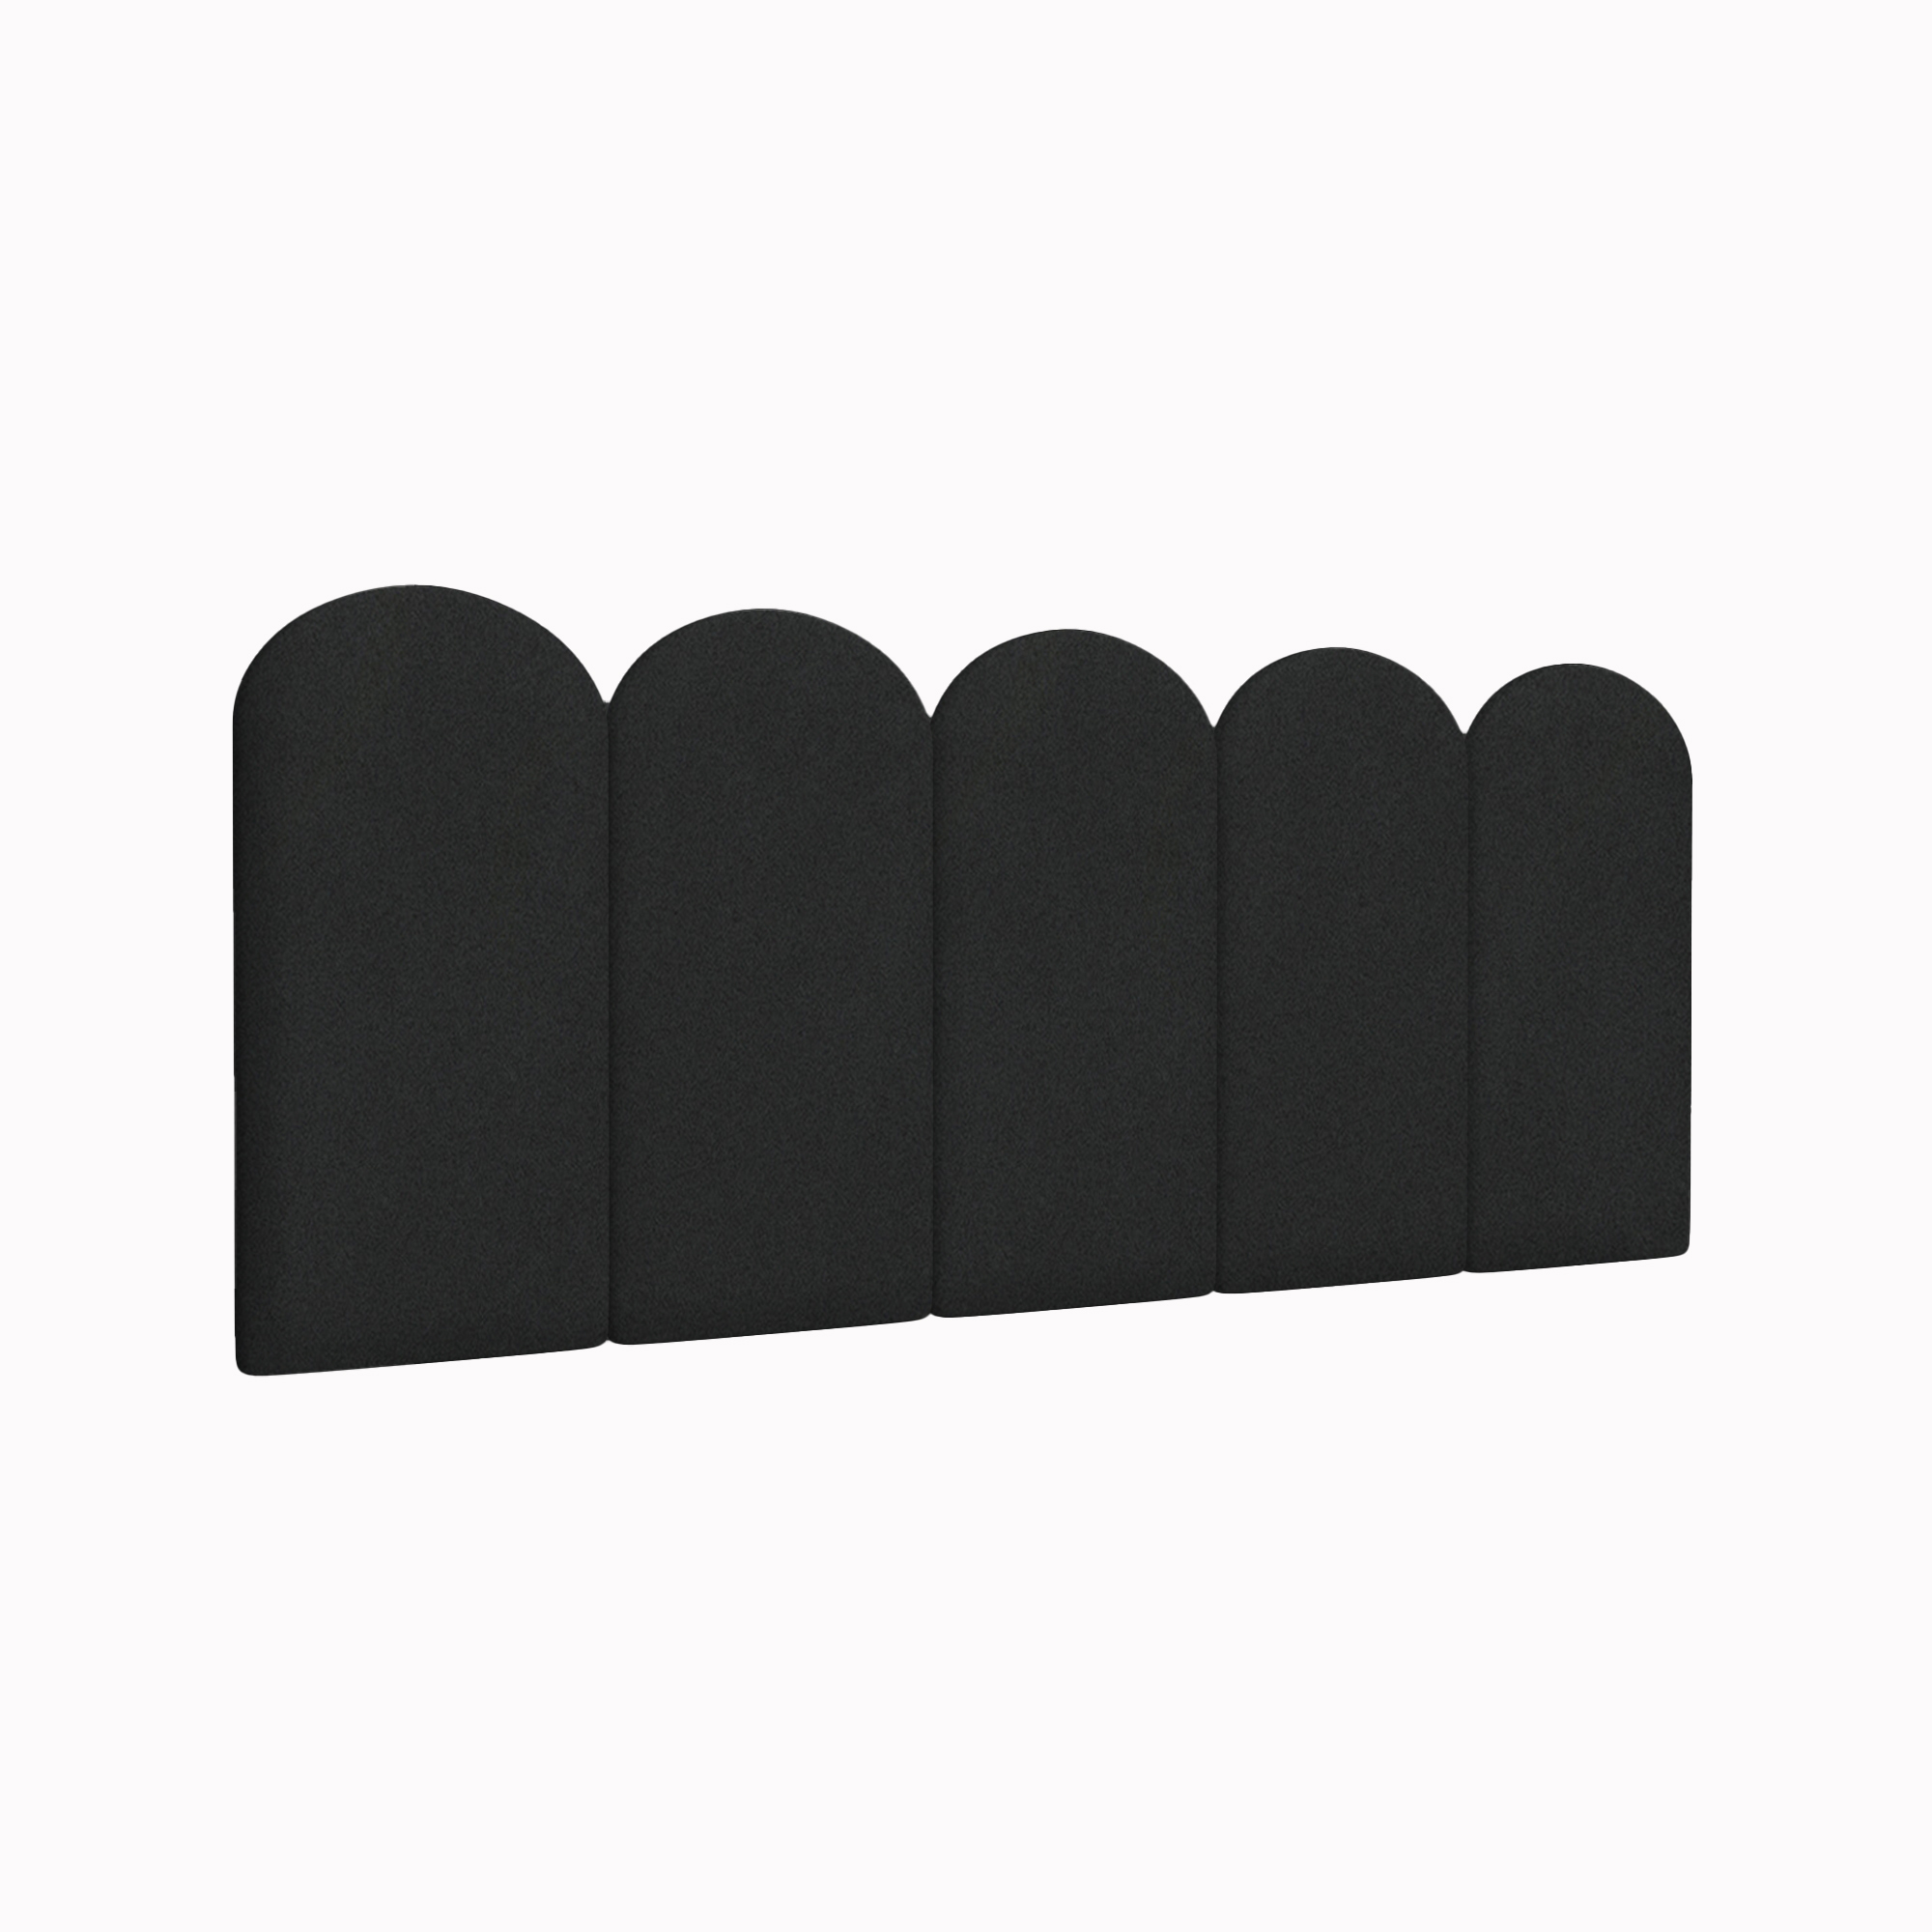 Мягкие обои Velour Black 30х60R см 4 шт. мягкие кубики плюшики весёлая азбука